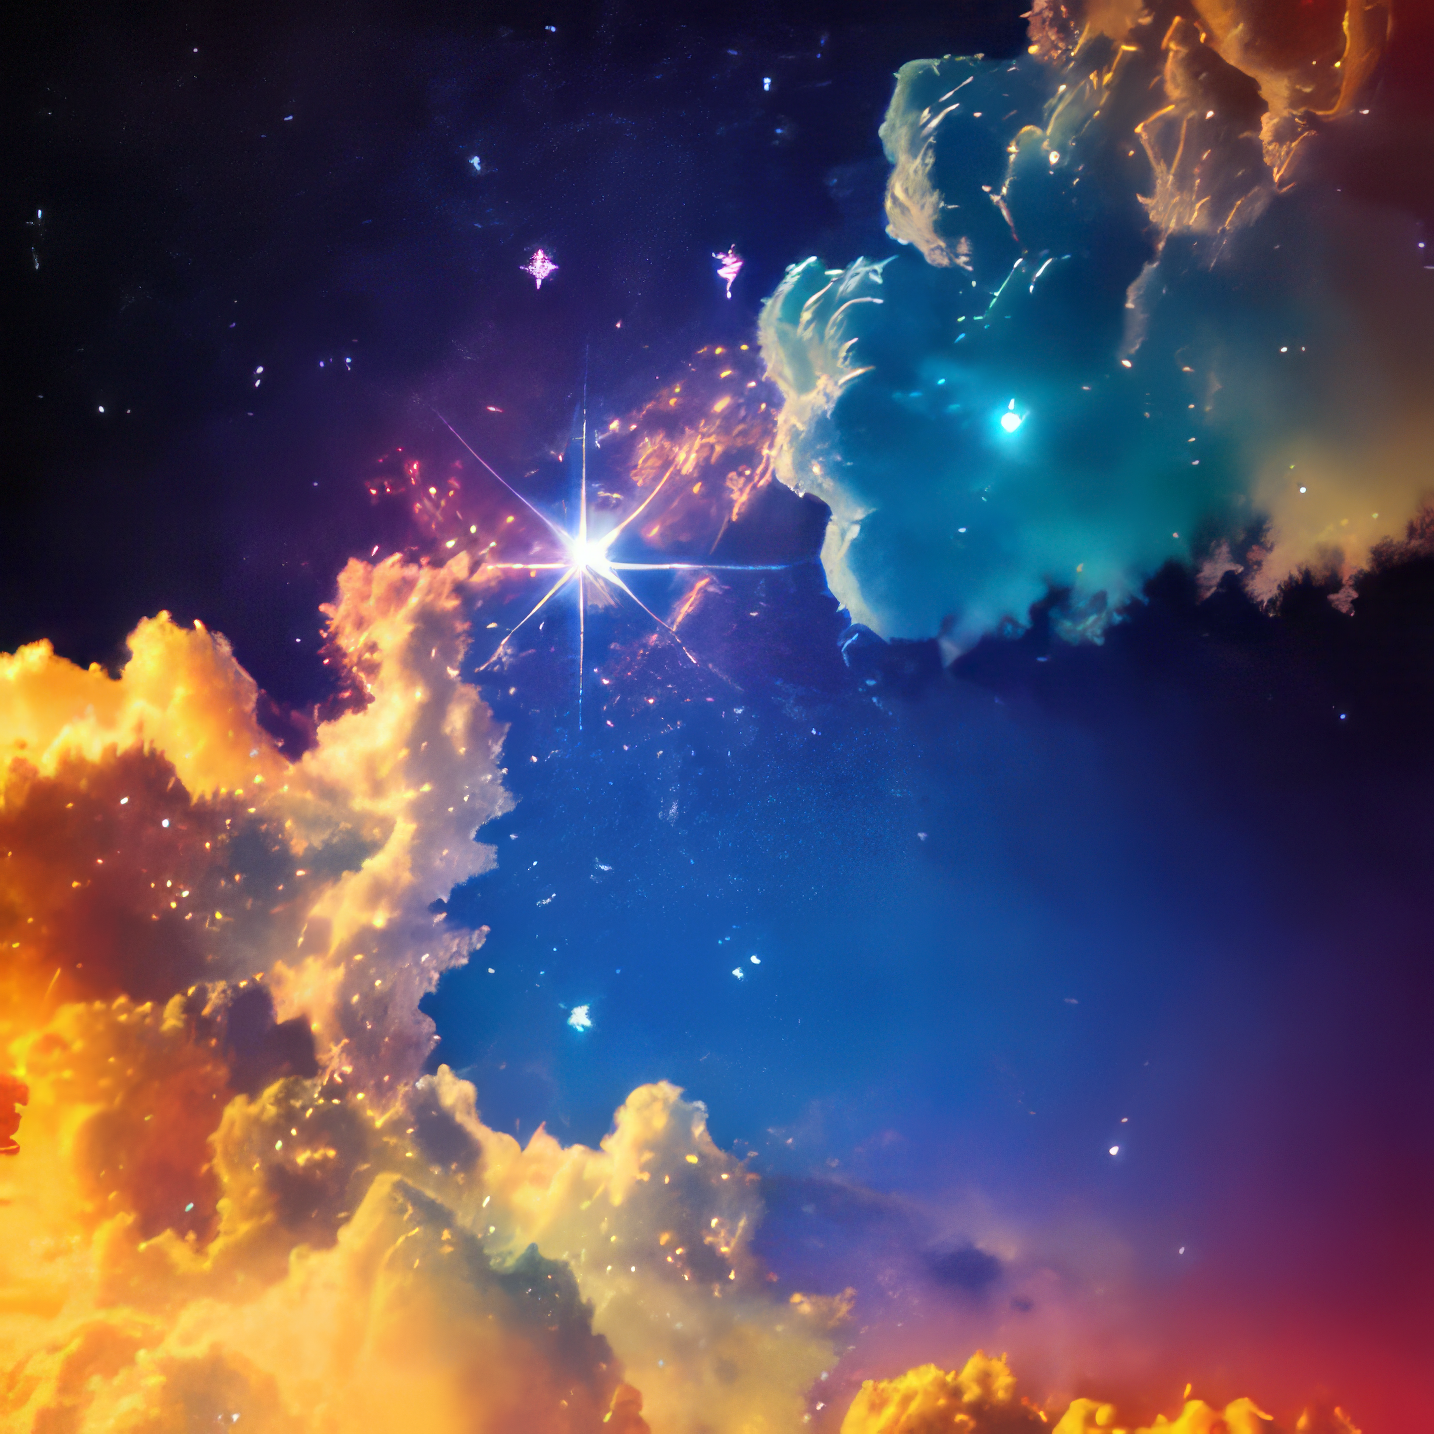 輝く美しい星と黄昏に浮かぶ雲の幻想的な風景のリアルな写真風の無料画像素材